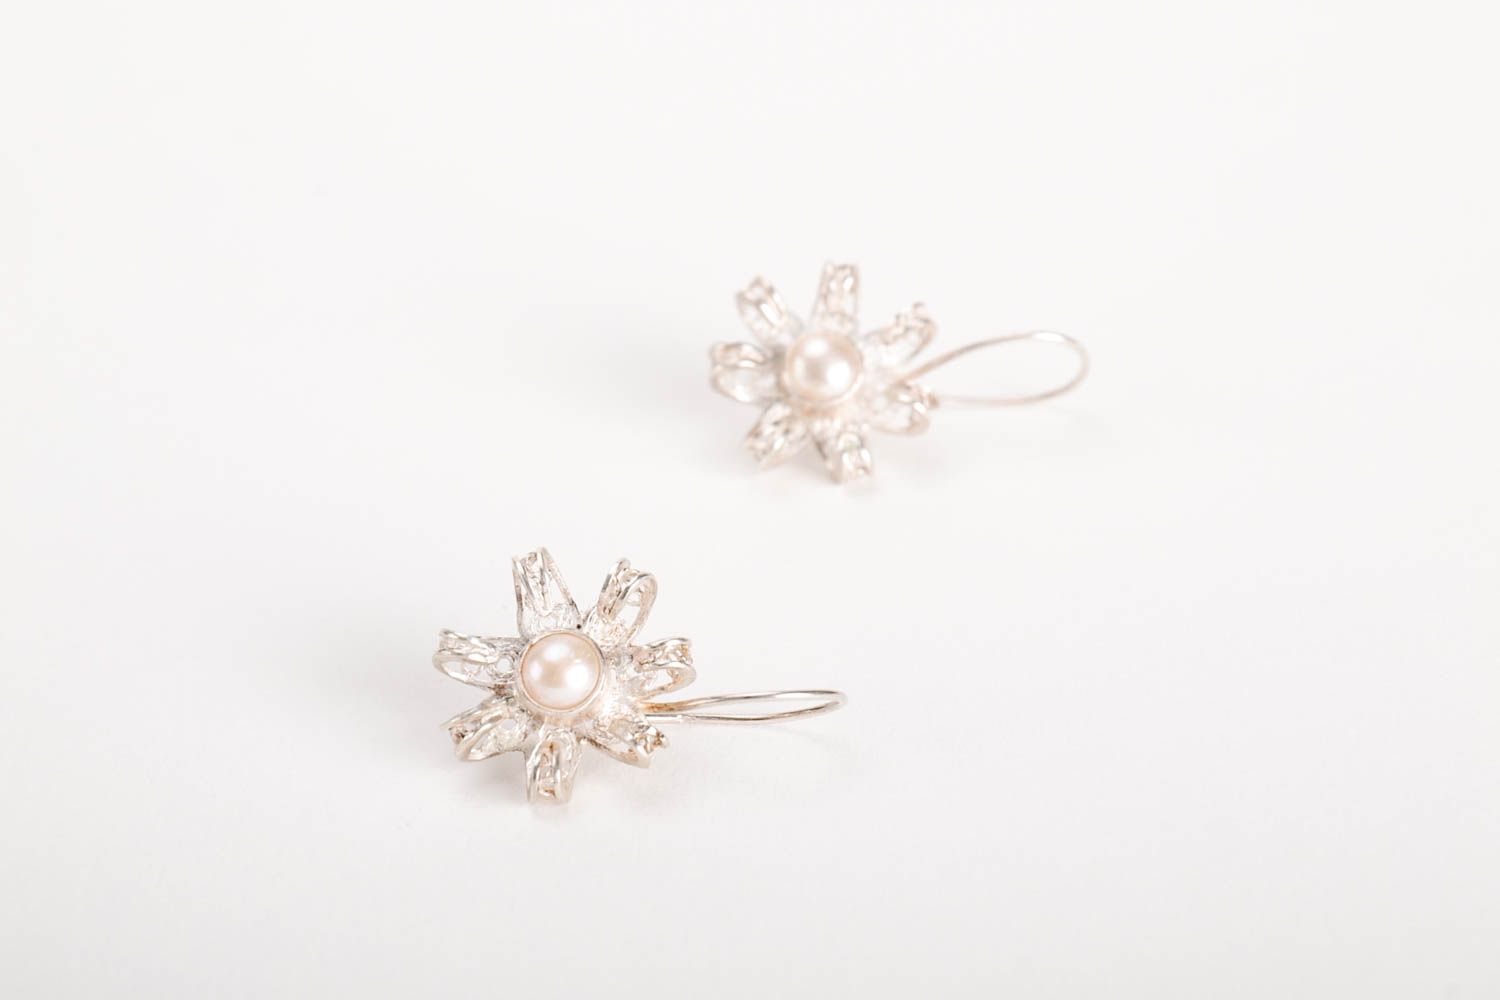 Handmade silver earrings designer earrings unusual gift for women silver jewelry photo 2